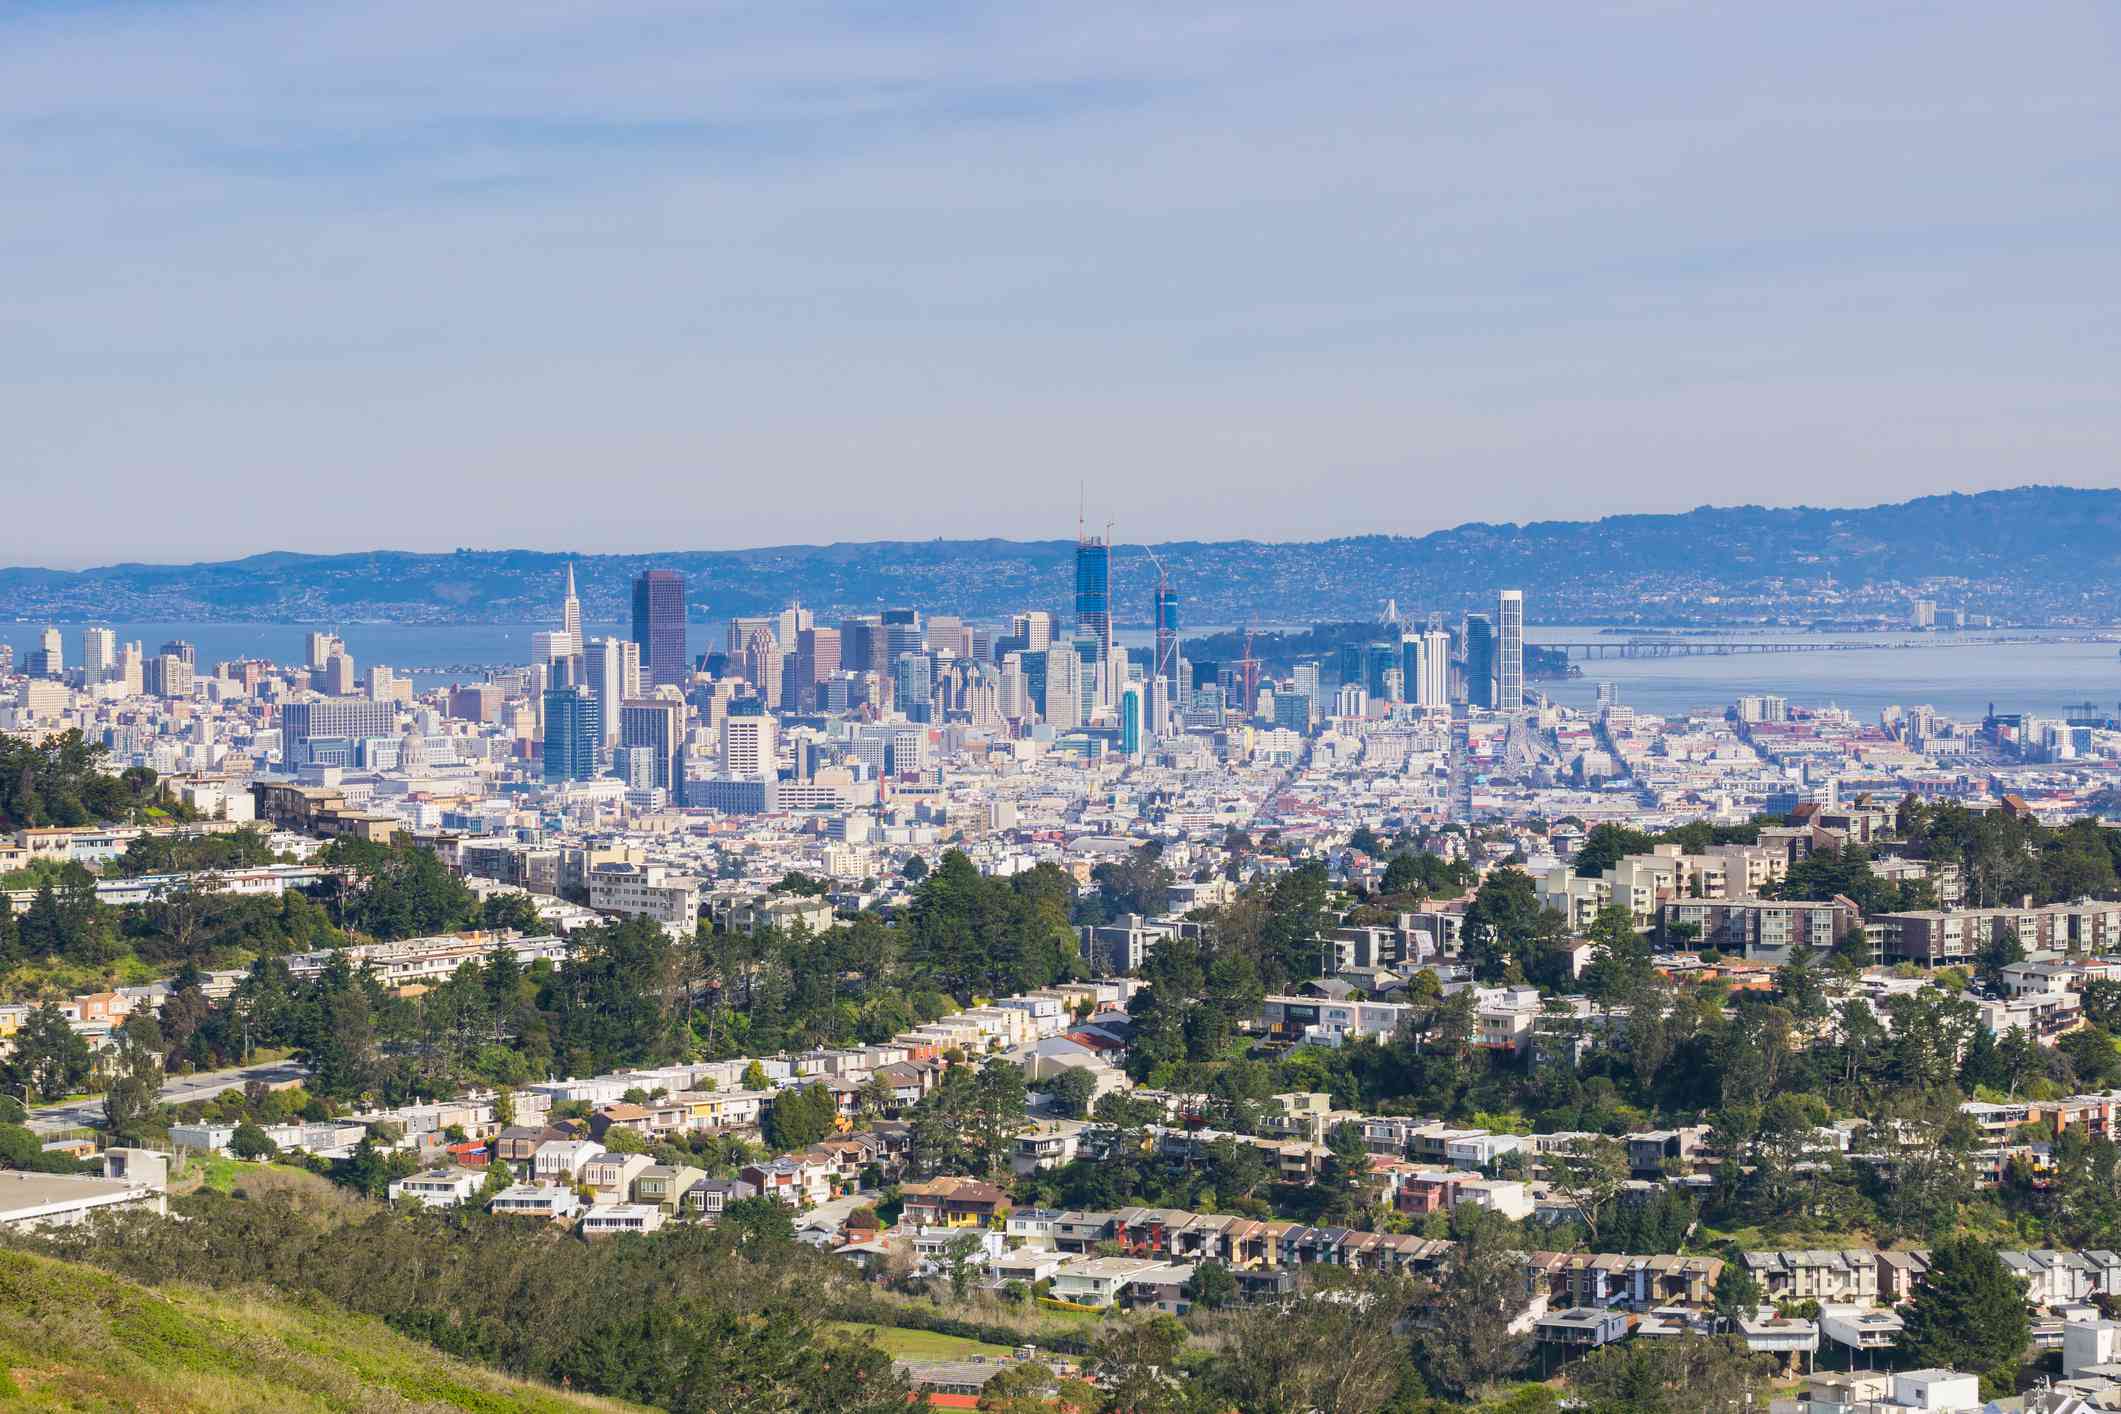 Vista de la ciudad de San Francisco desde el monte Davidson, con el cielo azul y montañas más pequeñas en la distancia, los altos edificios del centro de la ciudad y edificios más pequeños en primer plano situados entre altos árboles verdes